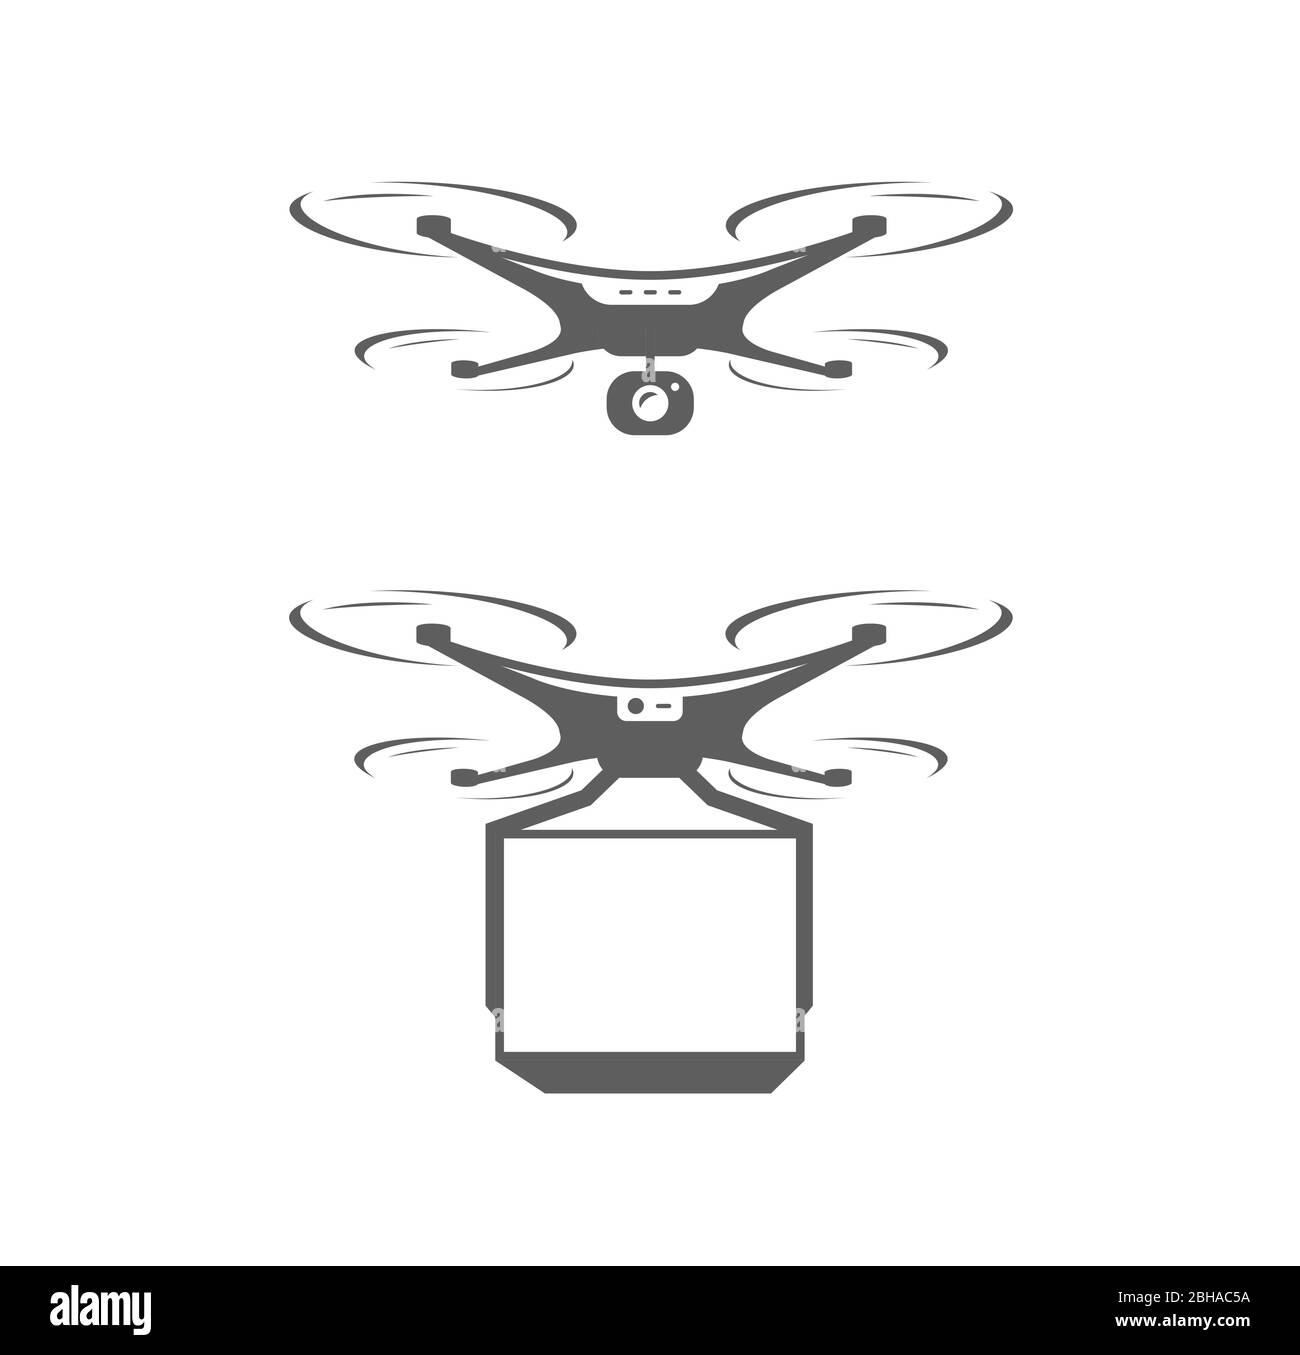 Icona o simbolo del quadricottero del drone. Illustrazione vettoriale della tecnologia Illustrazione Vettoriale